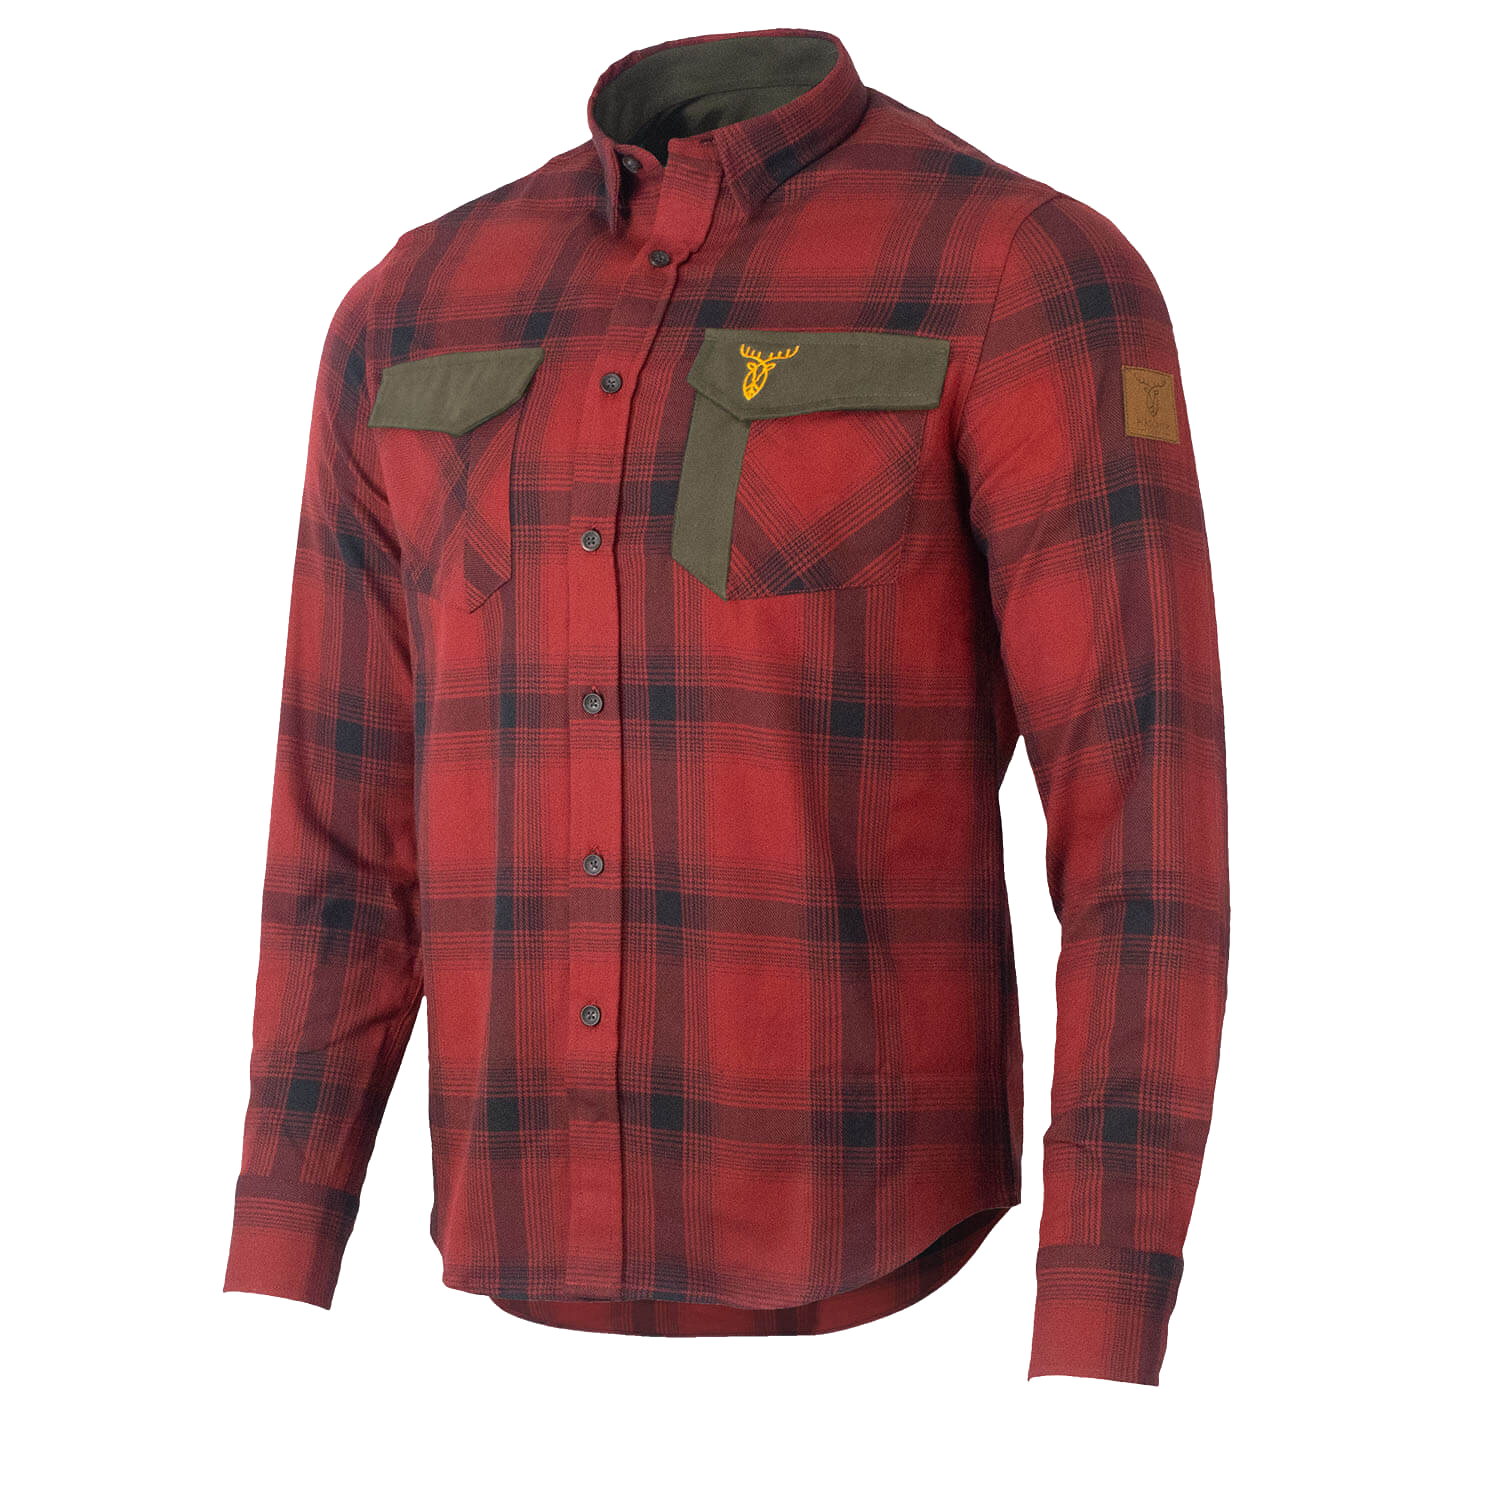 Pirscher Gear Forest Shirt (Fiery Red)